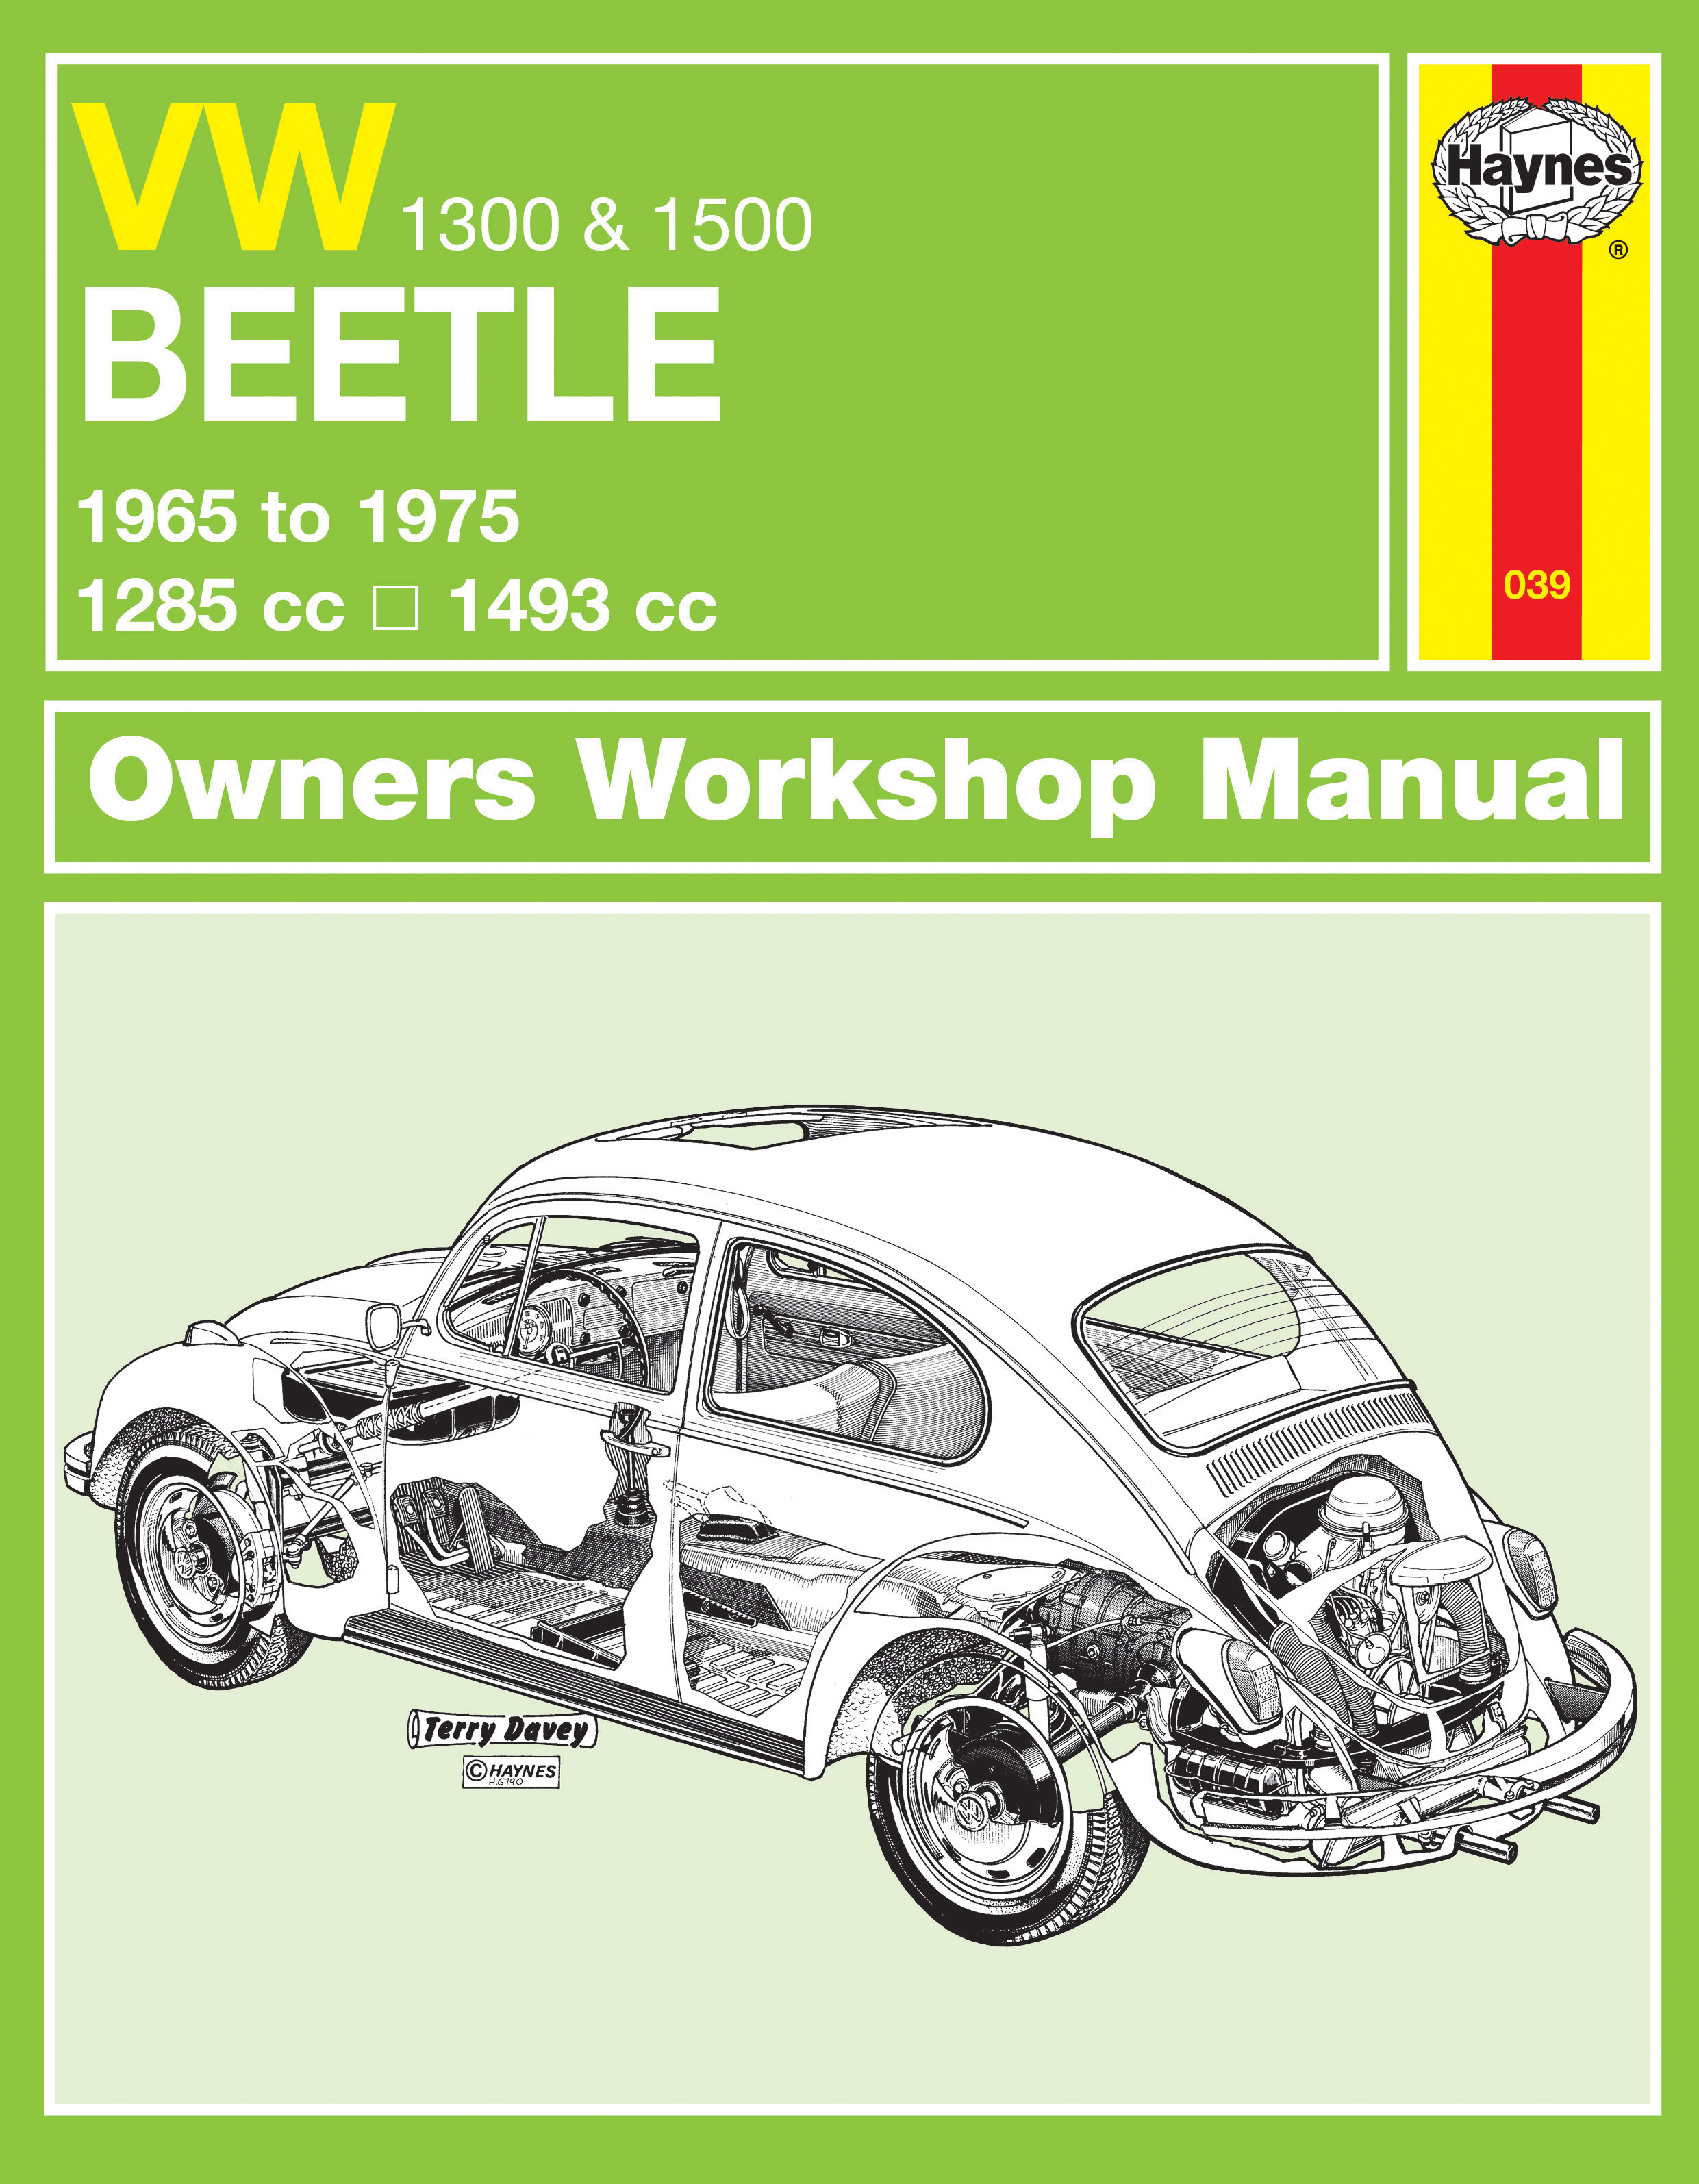 2002 vw beetle service manual pdf